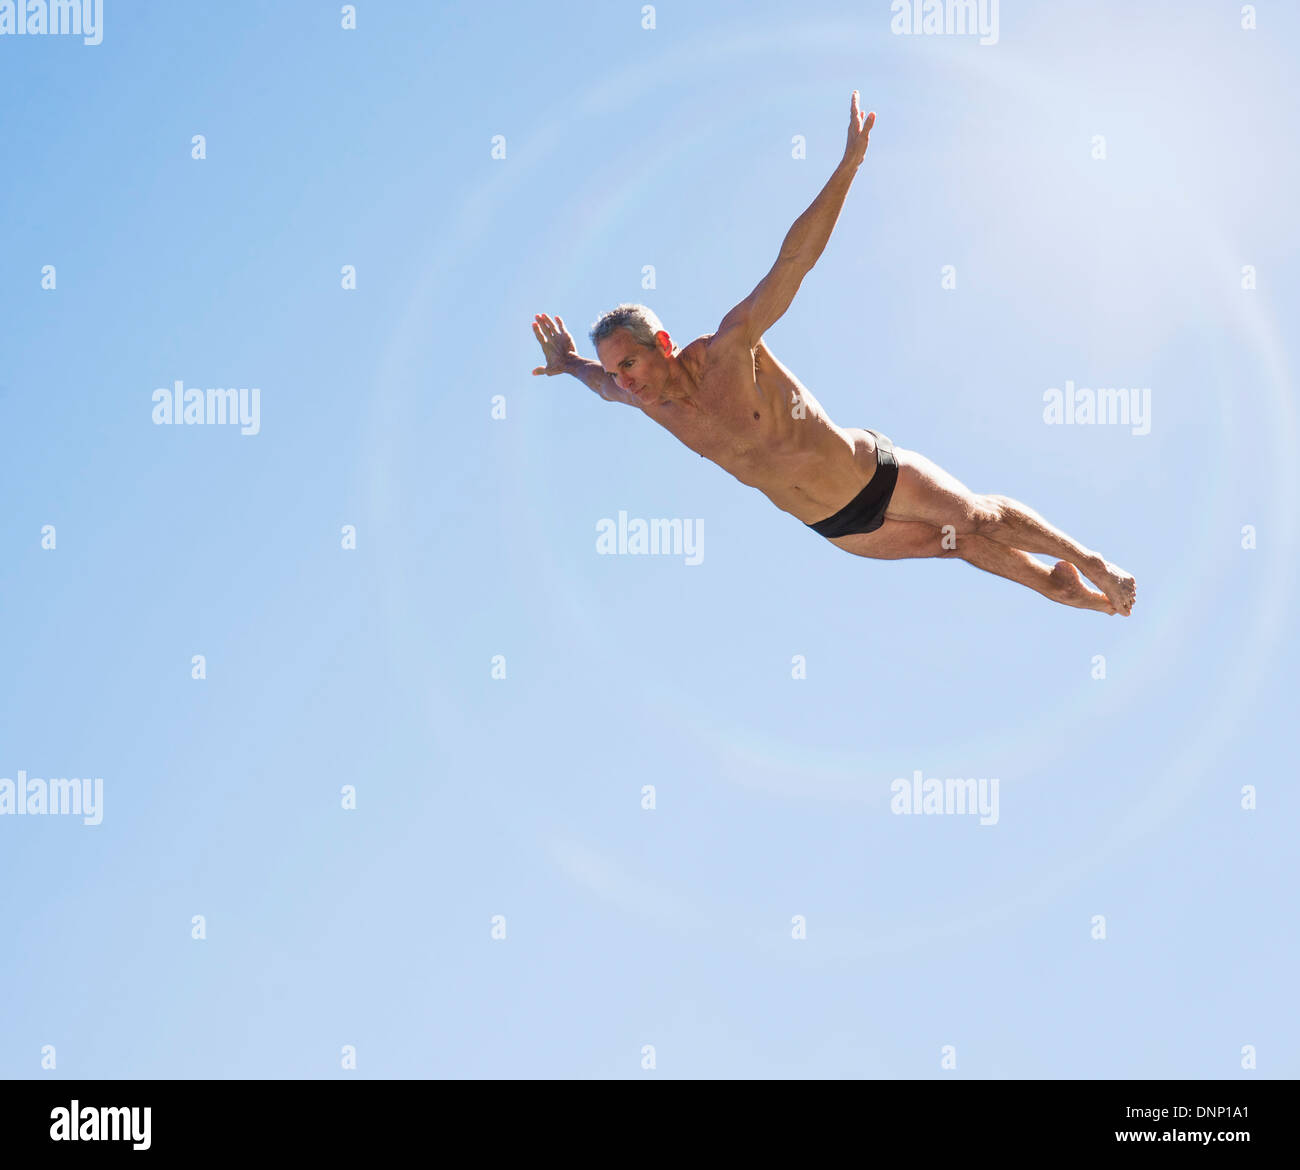 Sportliche Schwimmer der Luft gegen blauen Himmel Stockfoto